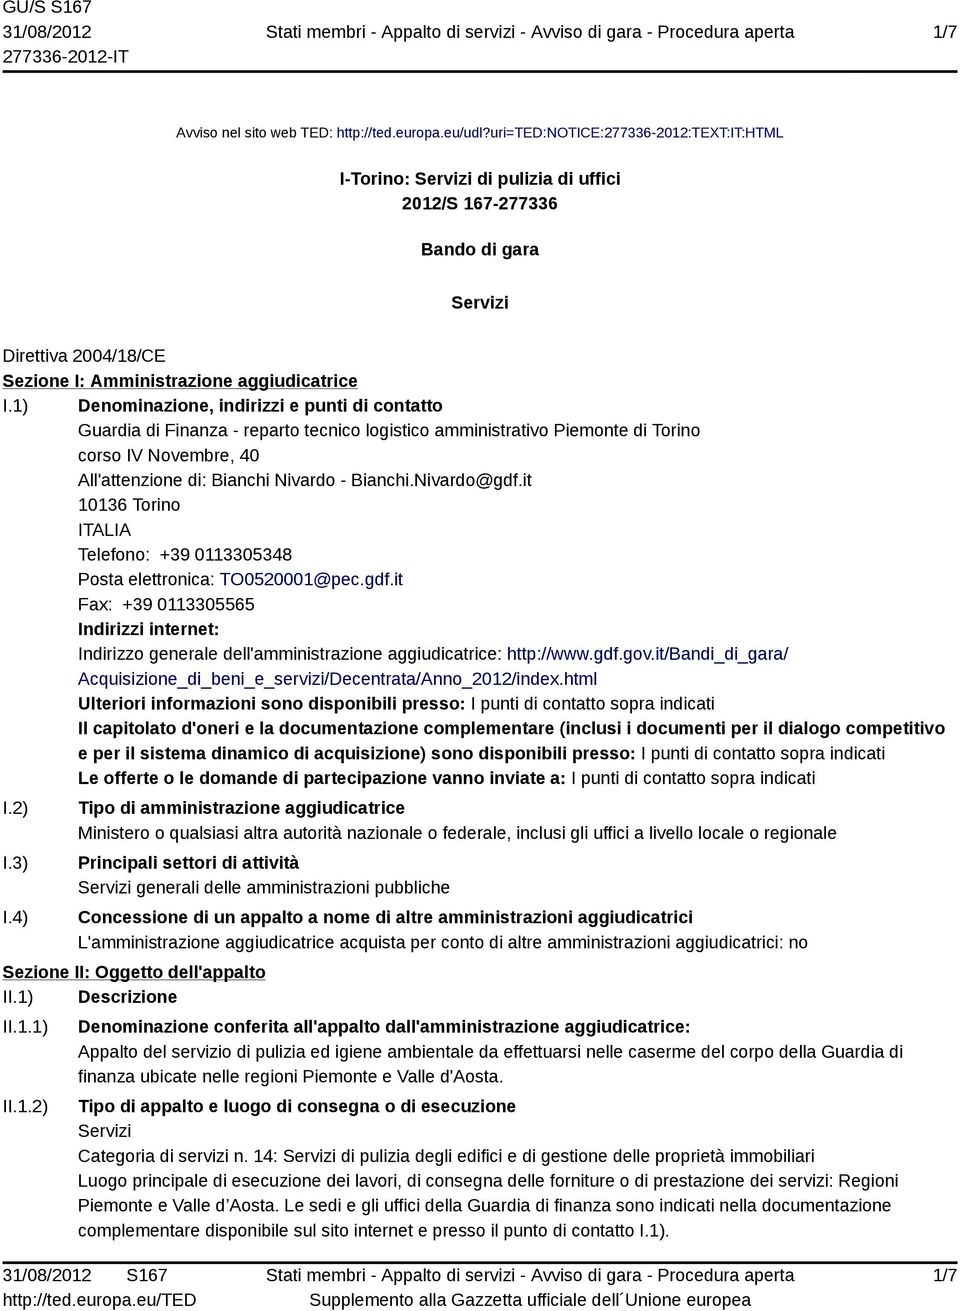 1) Denominazione, indirizzi e punti di contatto Guardia di Finanza - reparto tecnico logistico amministrativo Piemonte di Torino corso IV Novembre, 40 All'attenzione di: Bianchi Nivardo - Bianchi.